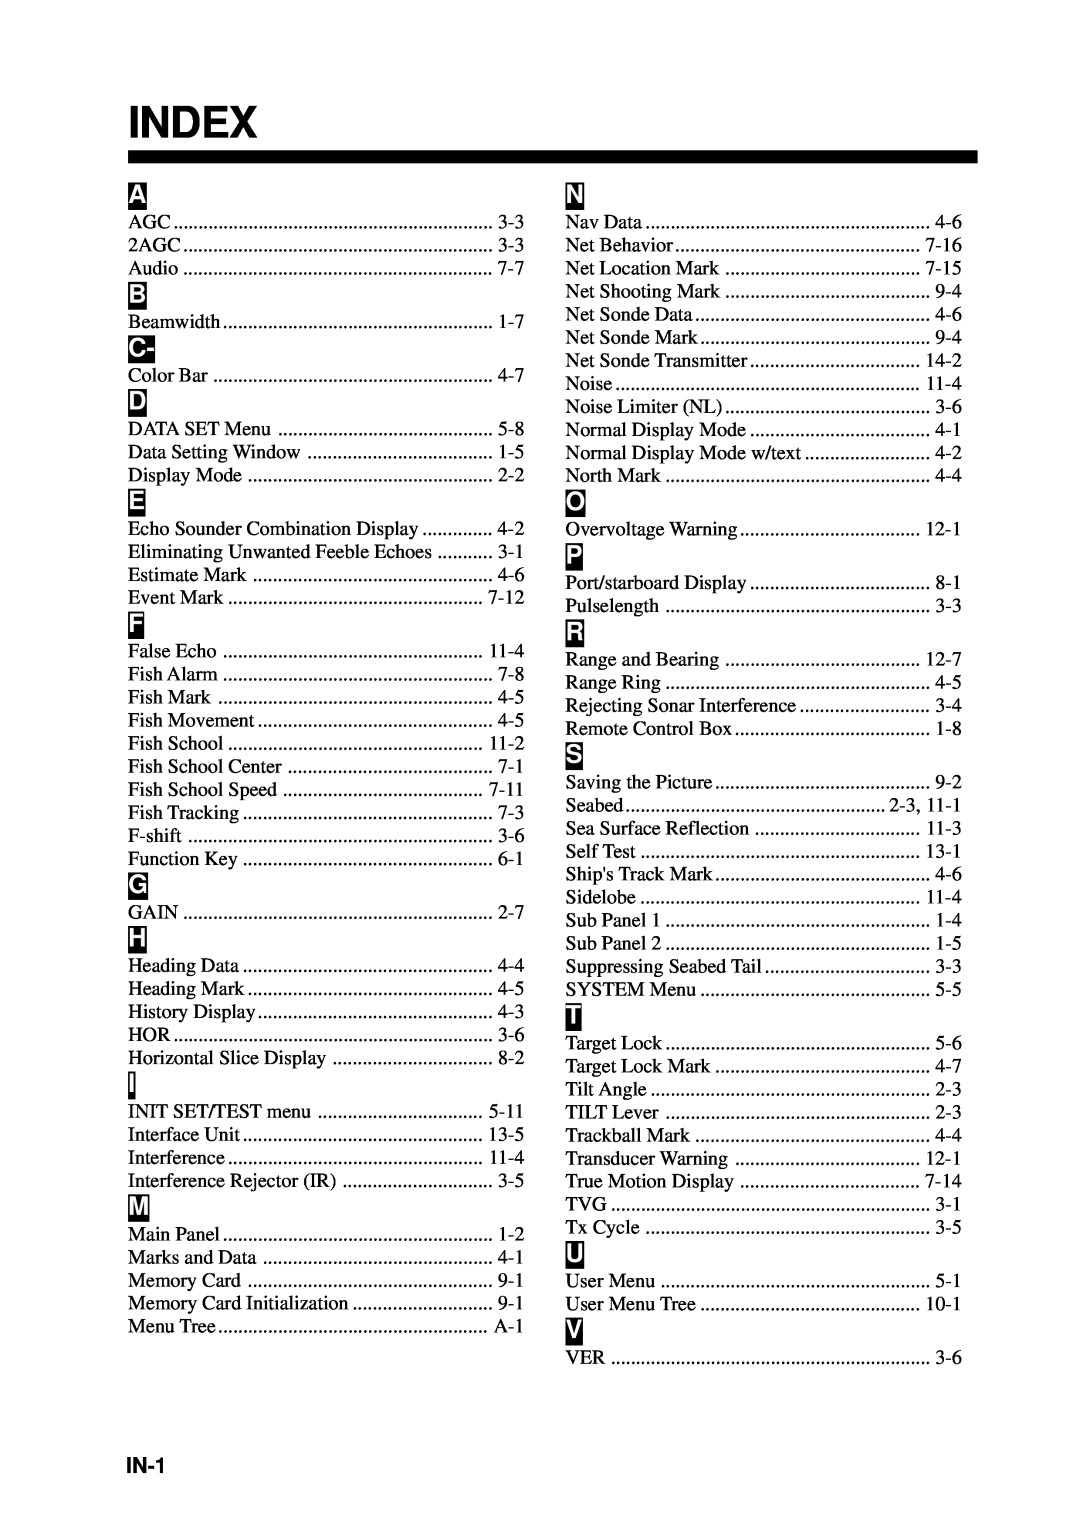 Furuno CSH-53 manual Index 